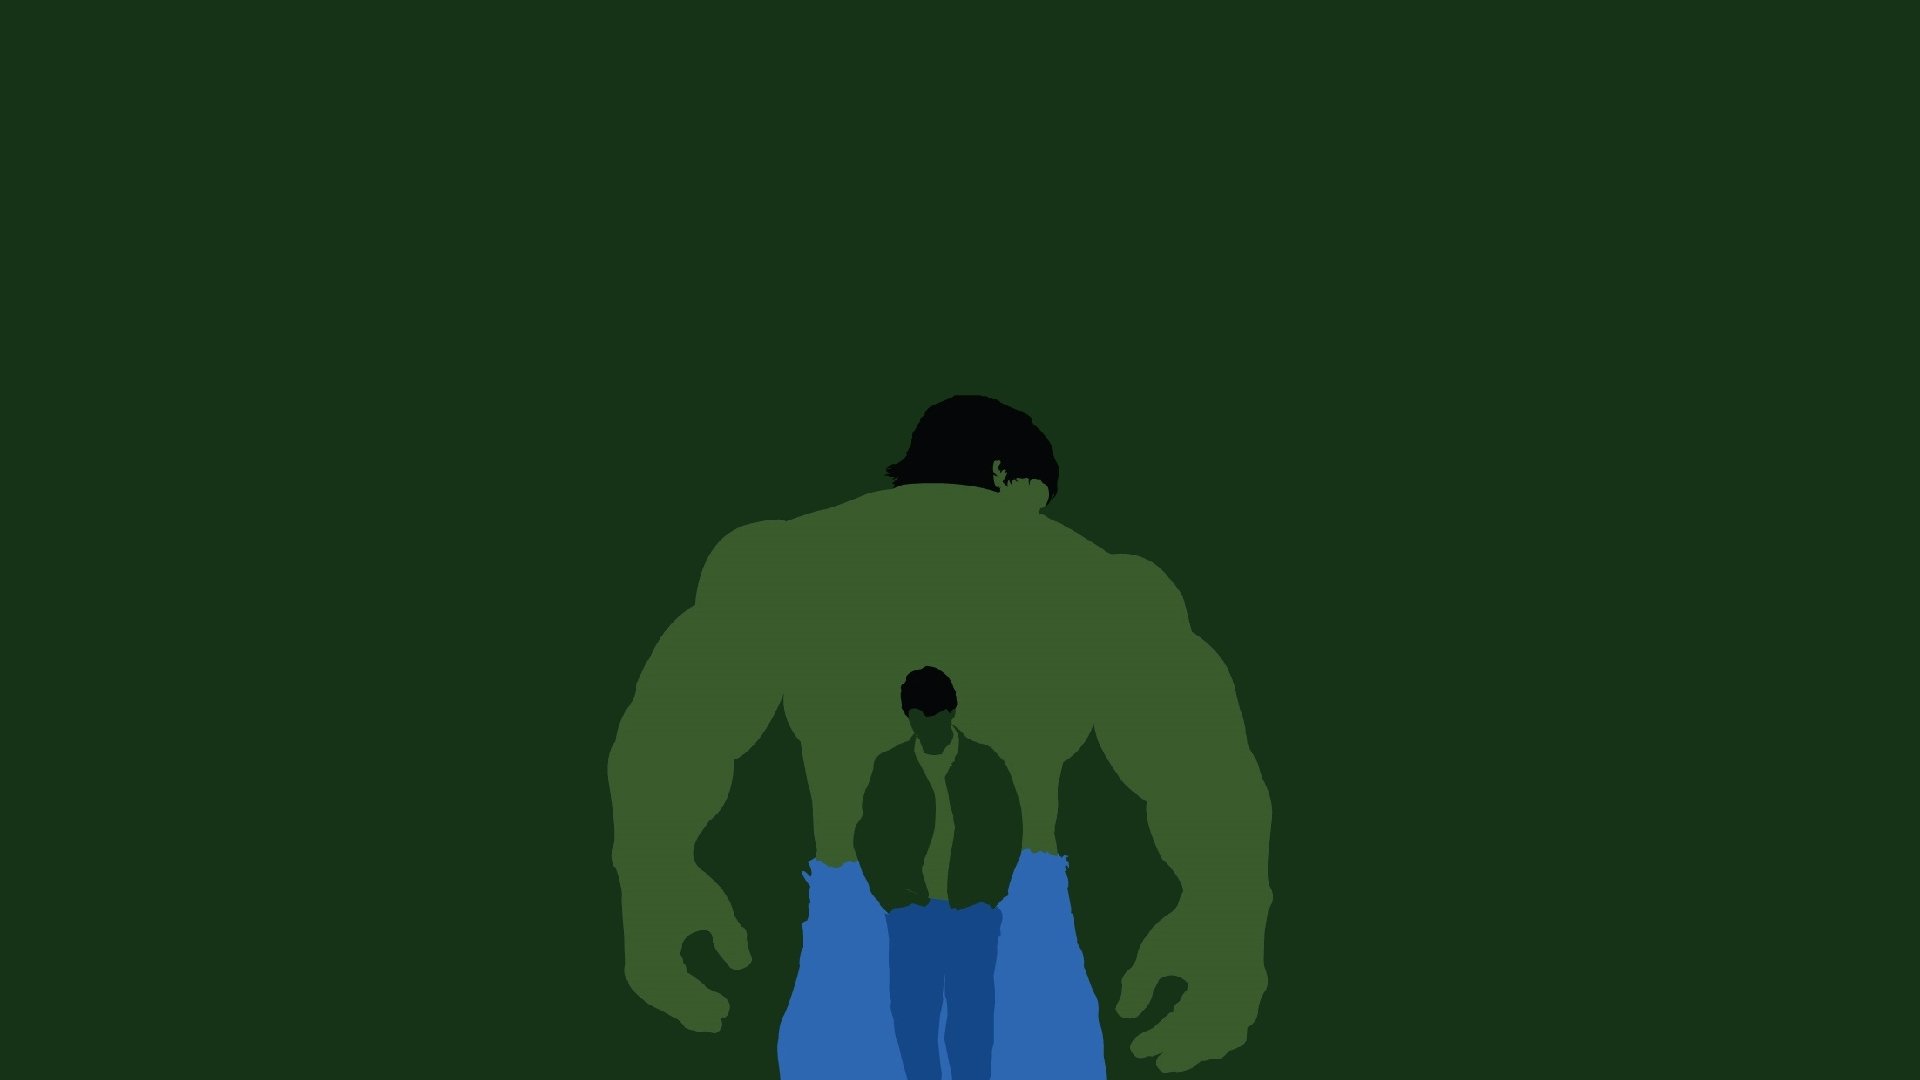 Hulk Abstract Wallpaper